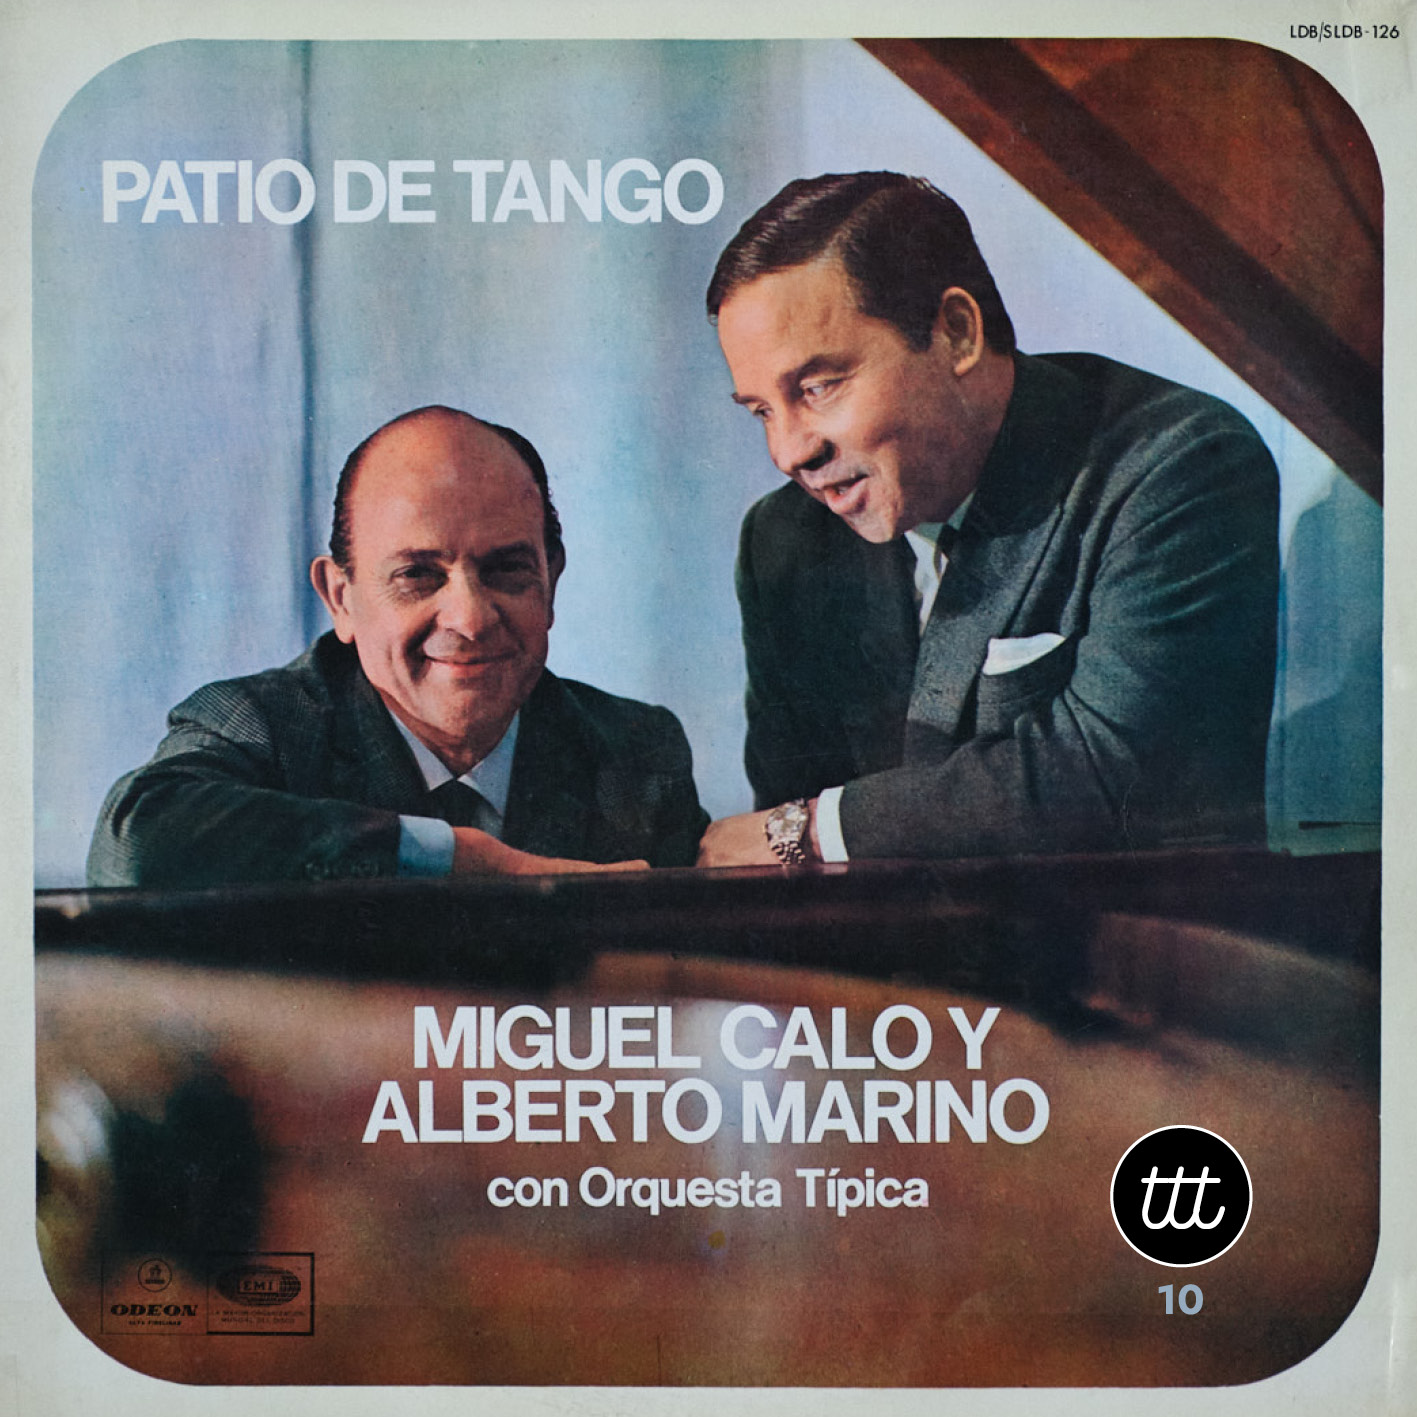 Miguel Caló y Alberto Marino – Patio de Tango – LDB 126 – Tango Time Travel